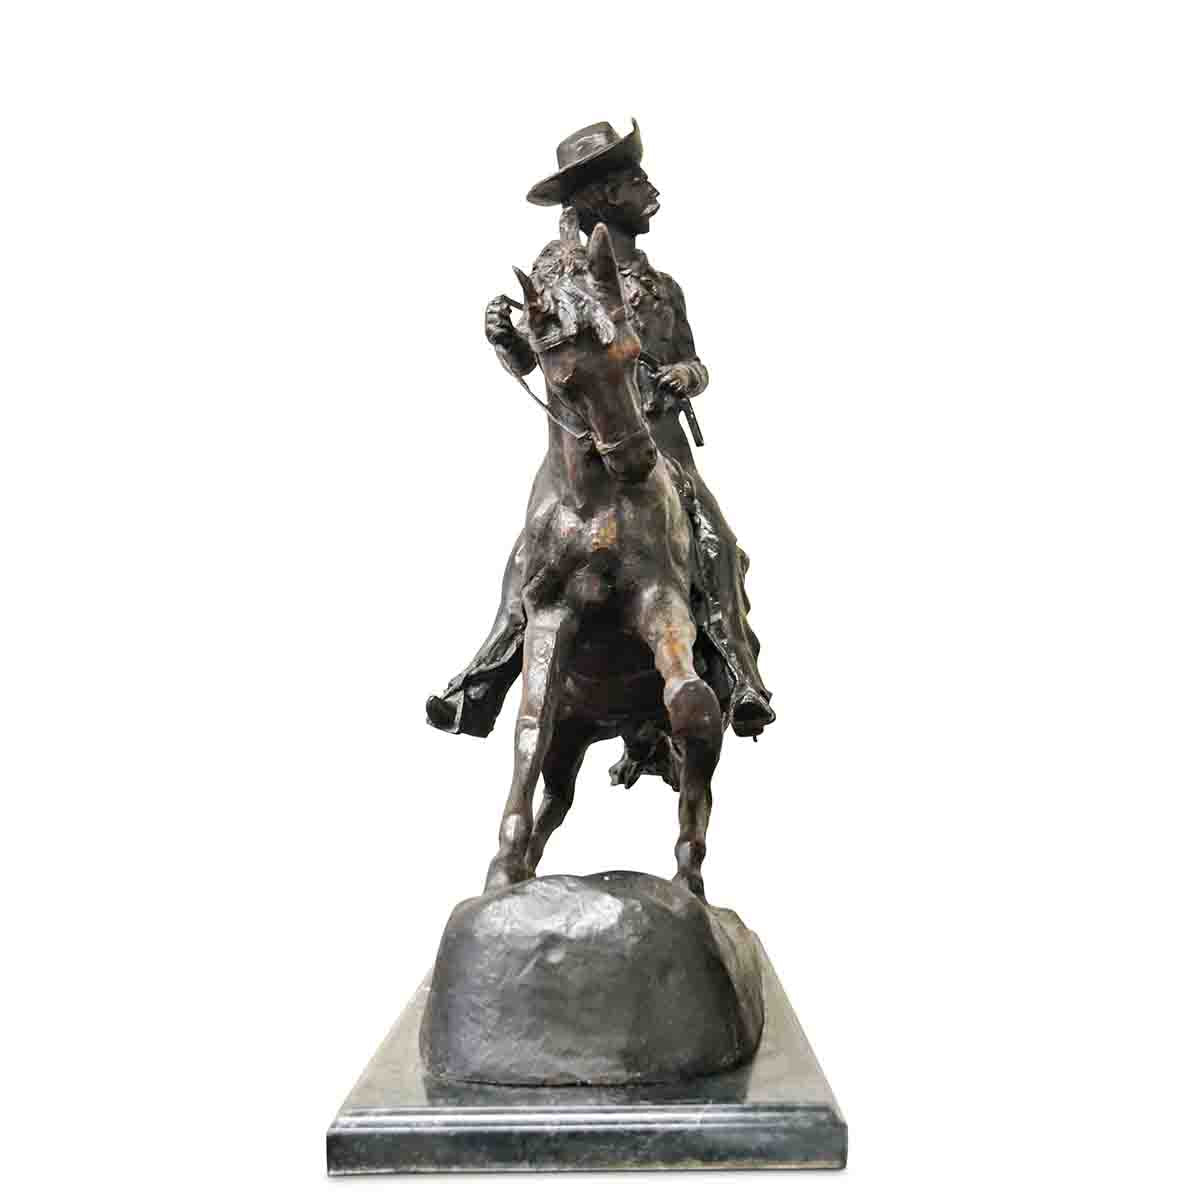 Remington Cowboy Statue